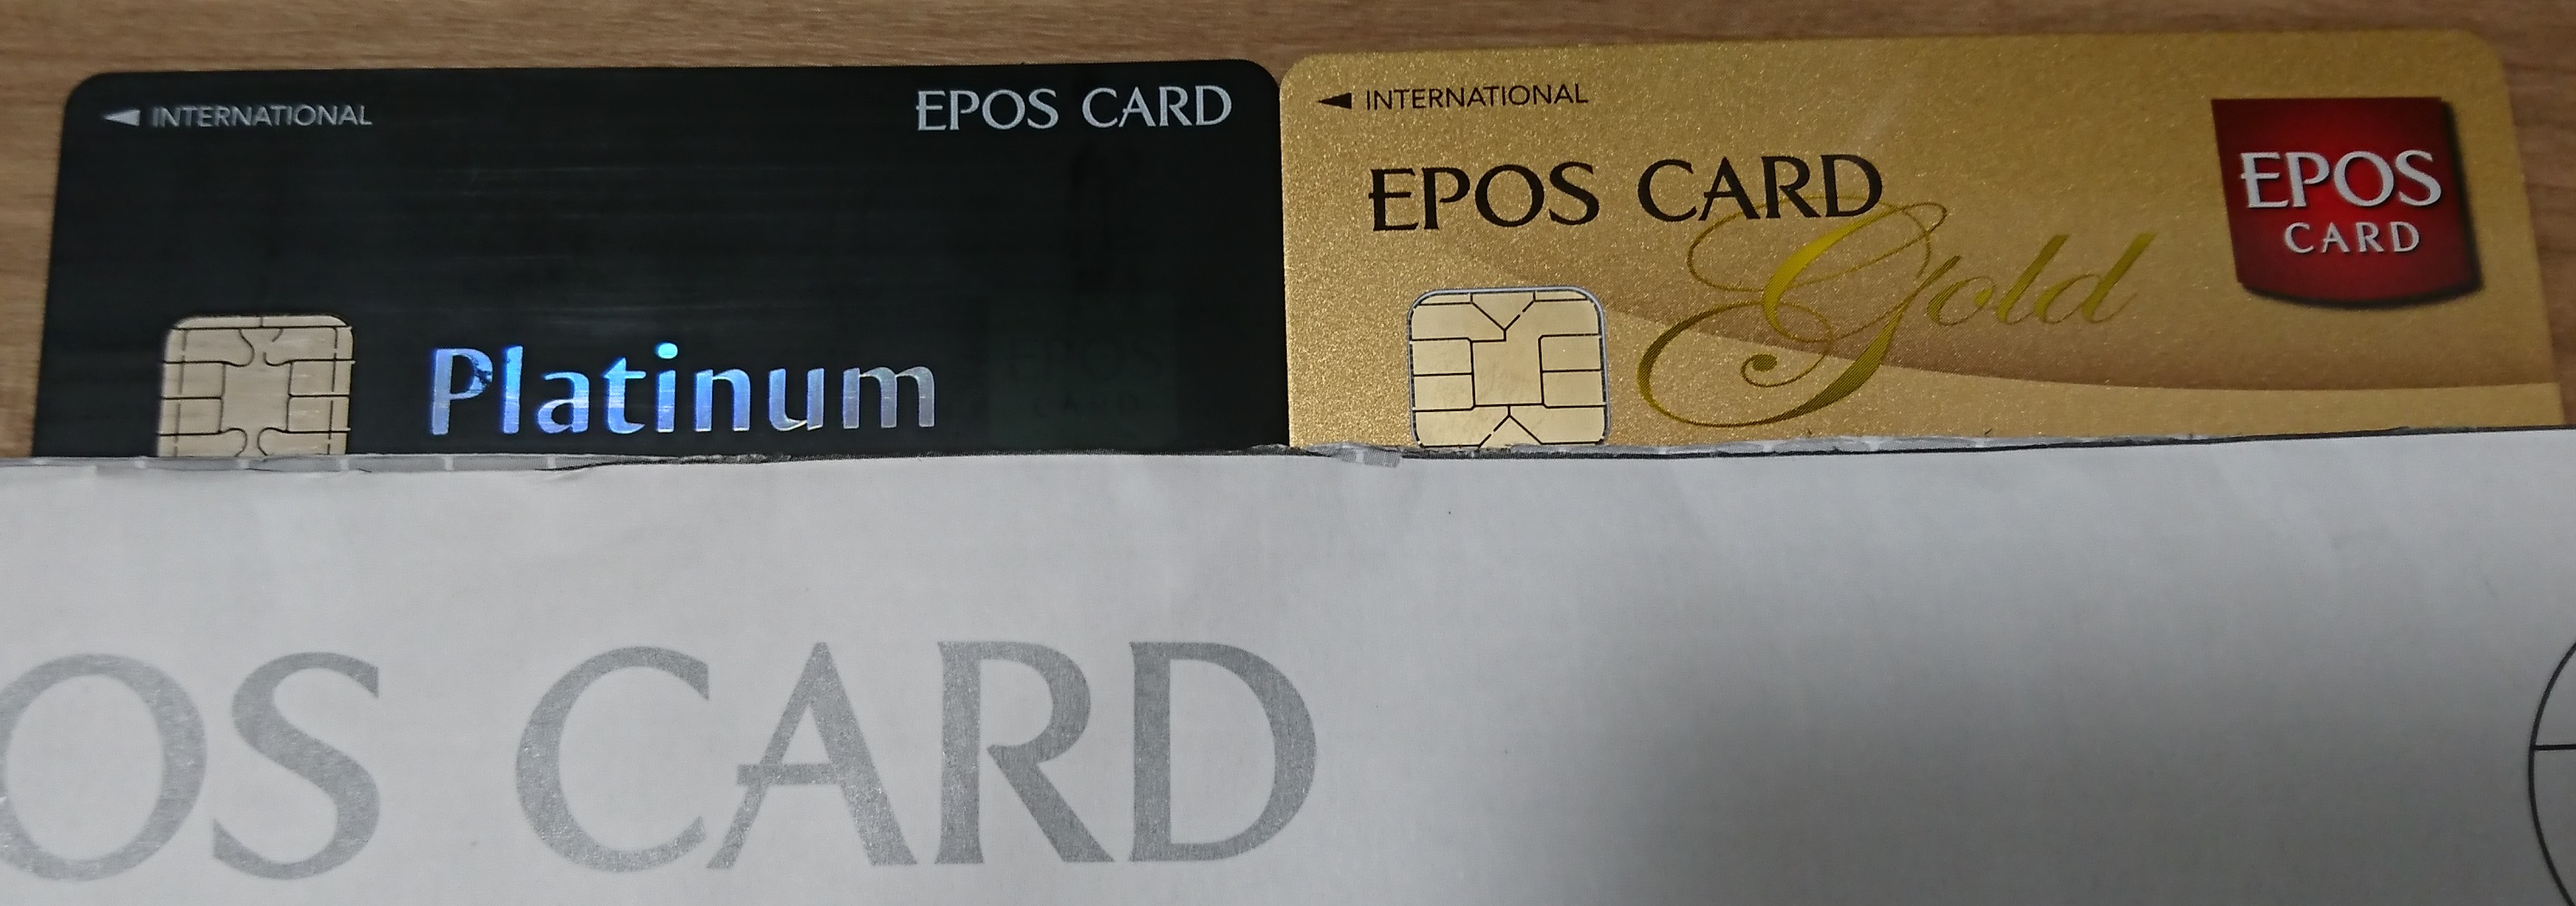 エポス カード プラチナ